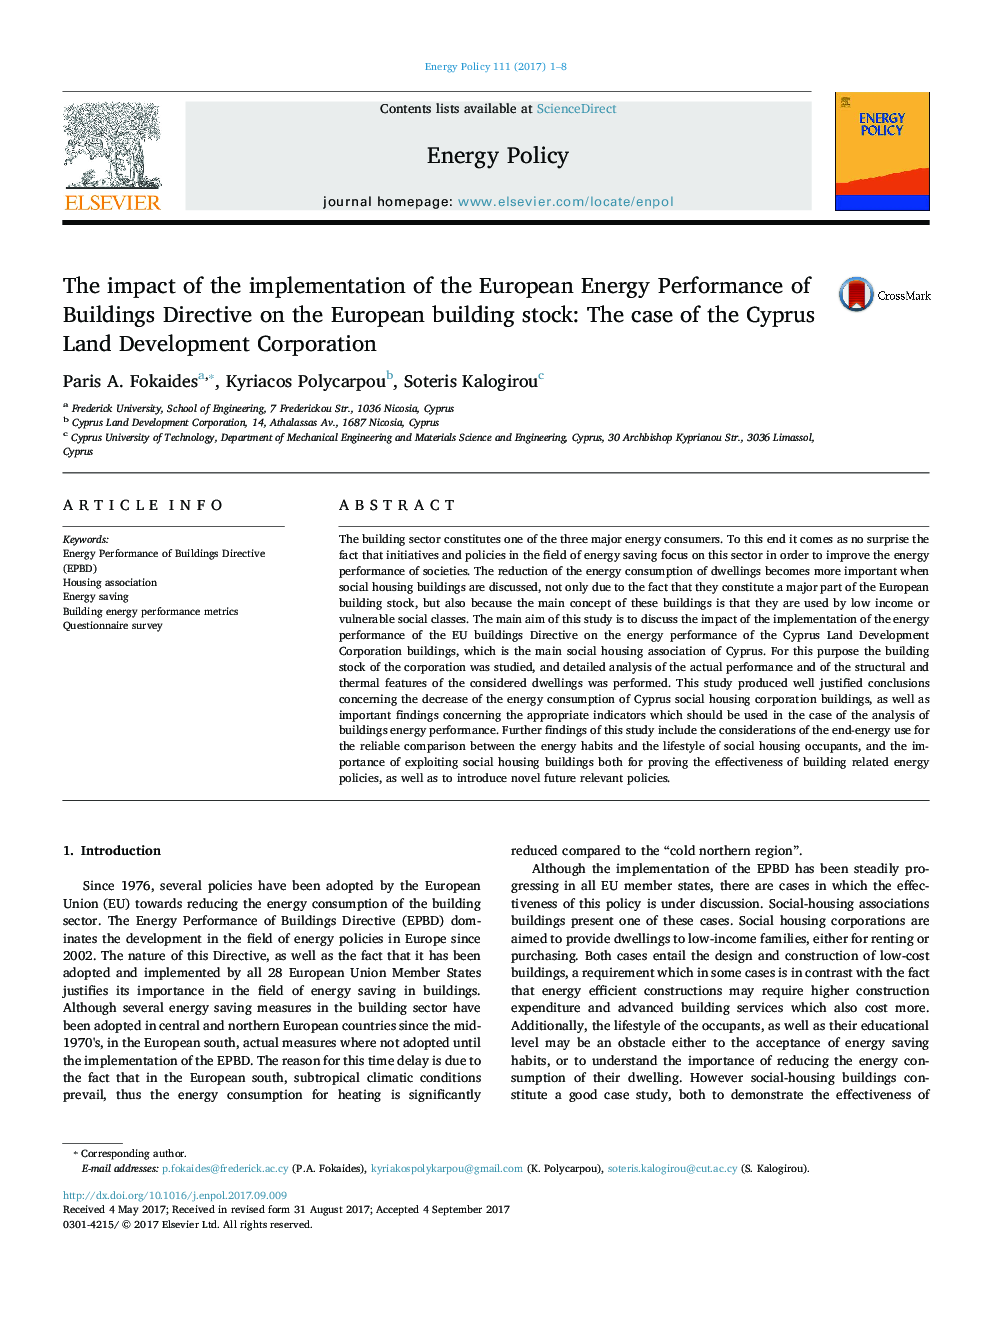 تأثیر اجرای دستورالعمل اجرایی انرژی اروپا در ساختمان های اروپایی: مورد شرکت توسعه زمین در قبرس 